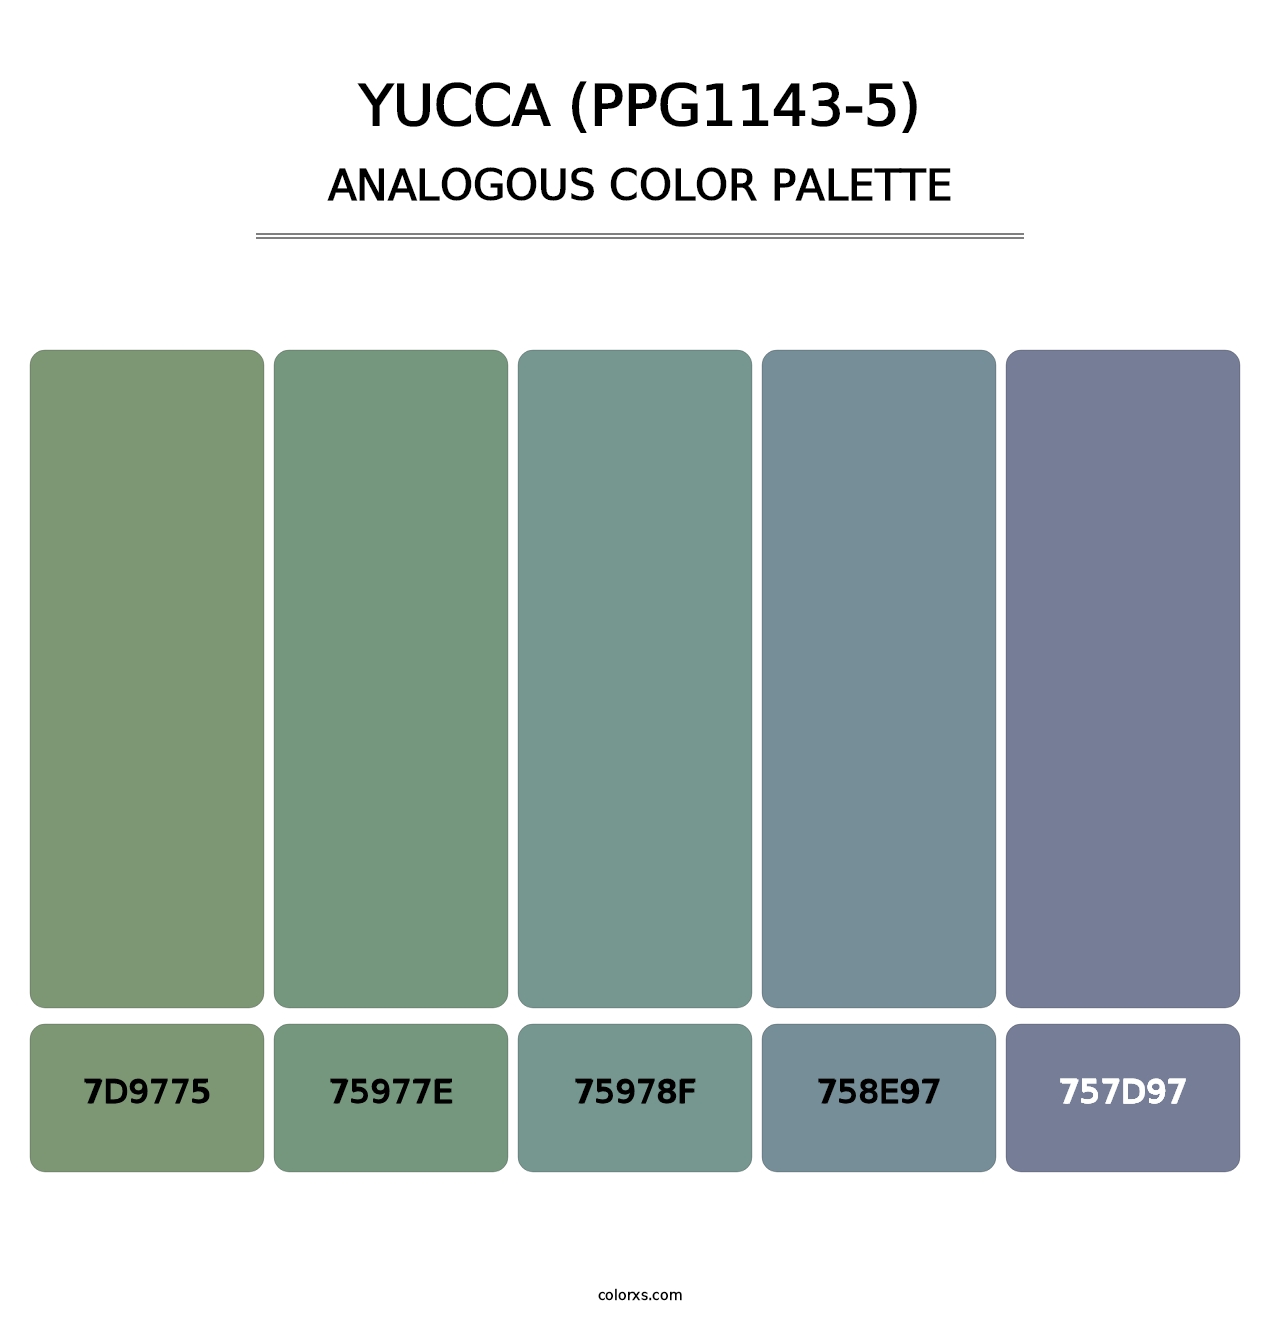 Yucca (PPG1143-5) - Analogous Color Palette